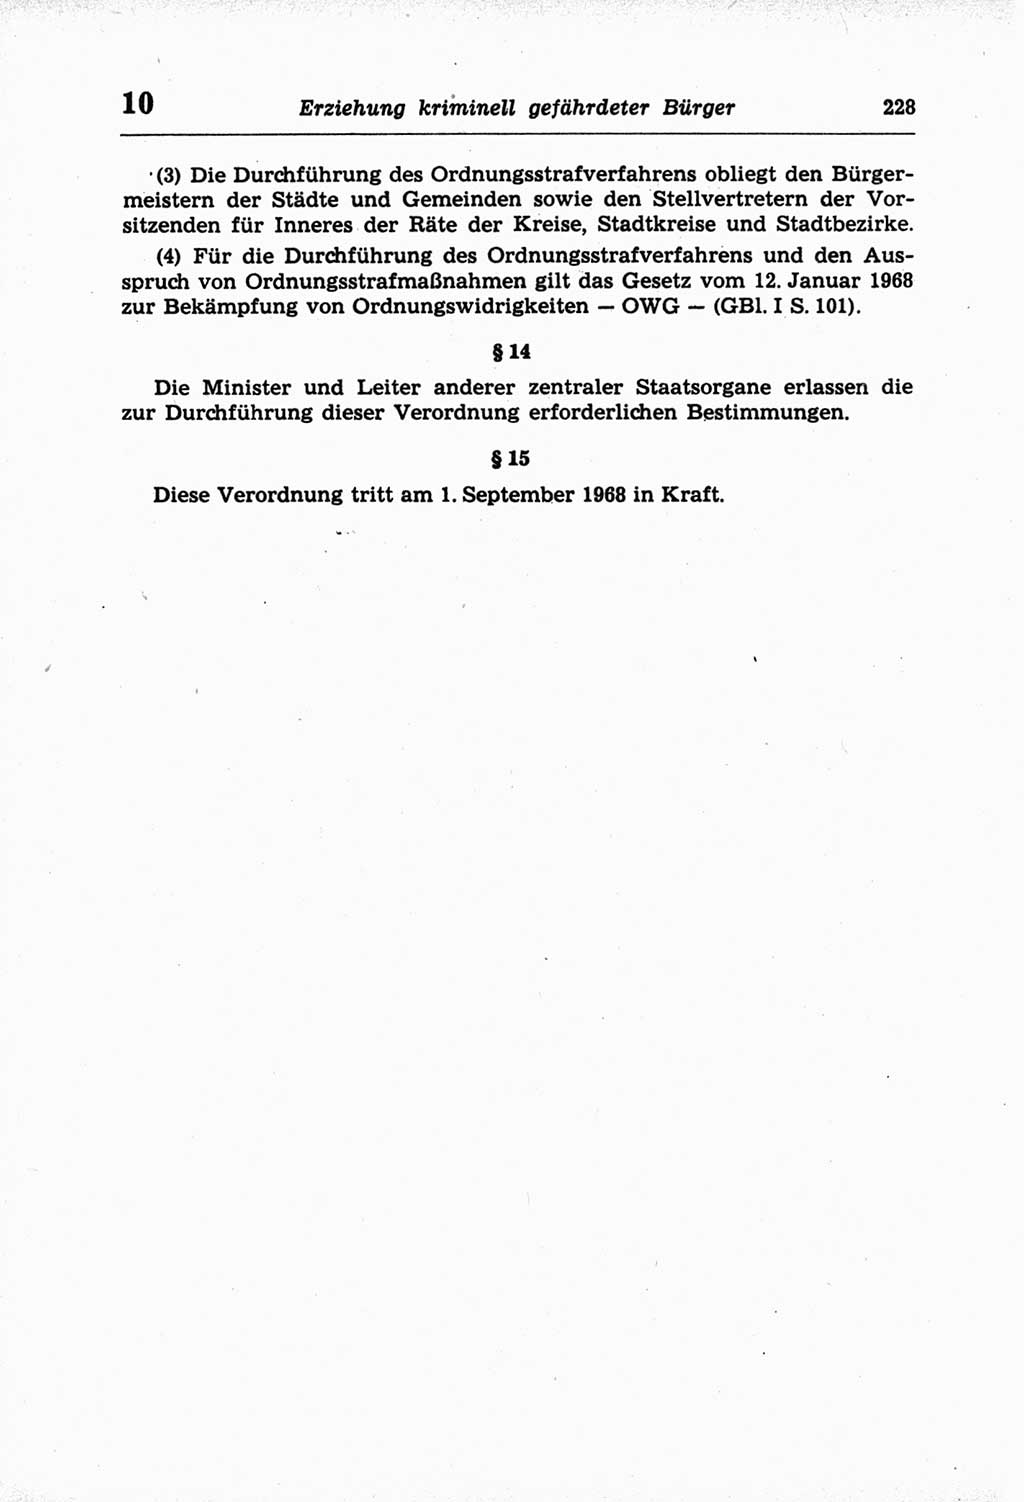 Strafprozeßordnung (StPO) der Deutschen Demokratischen Republik (DDR) und angrenzende Gesetze und Bestimmungen 1968, Seite 228 (StPO Ges. Bstgn. DDR 1968, S. 228)